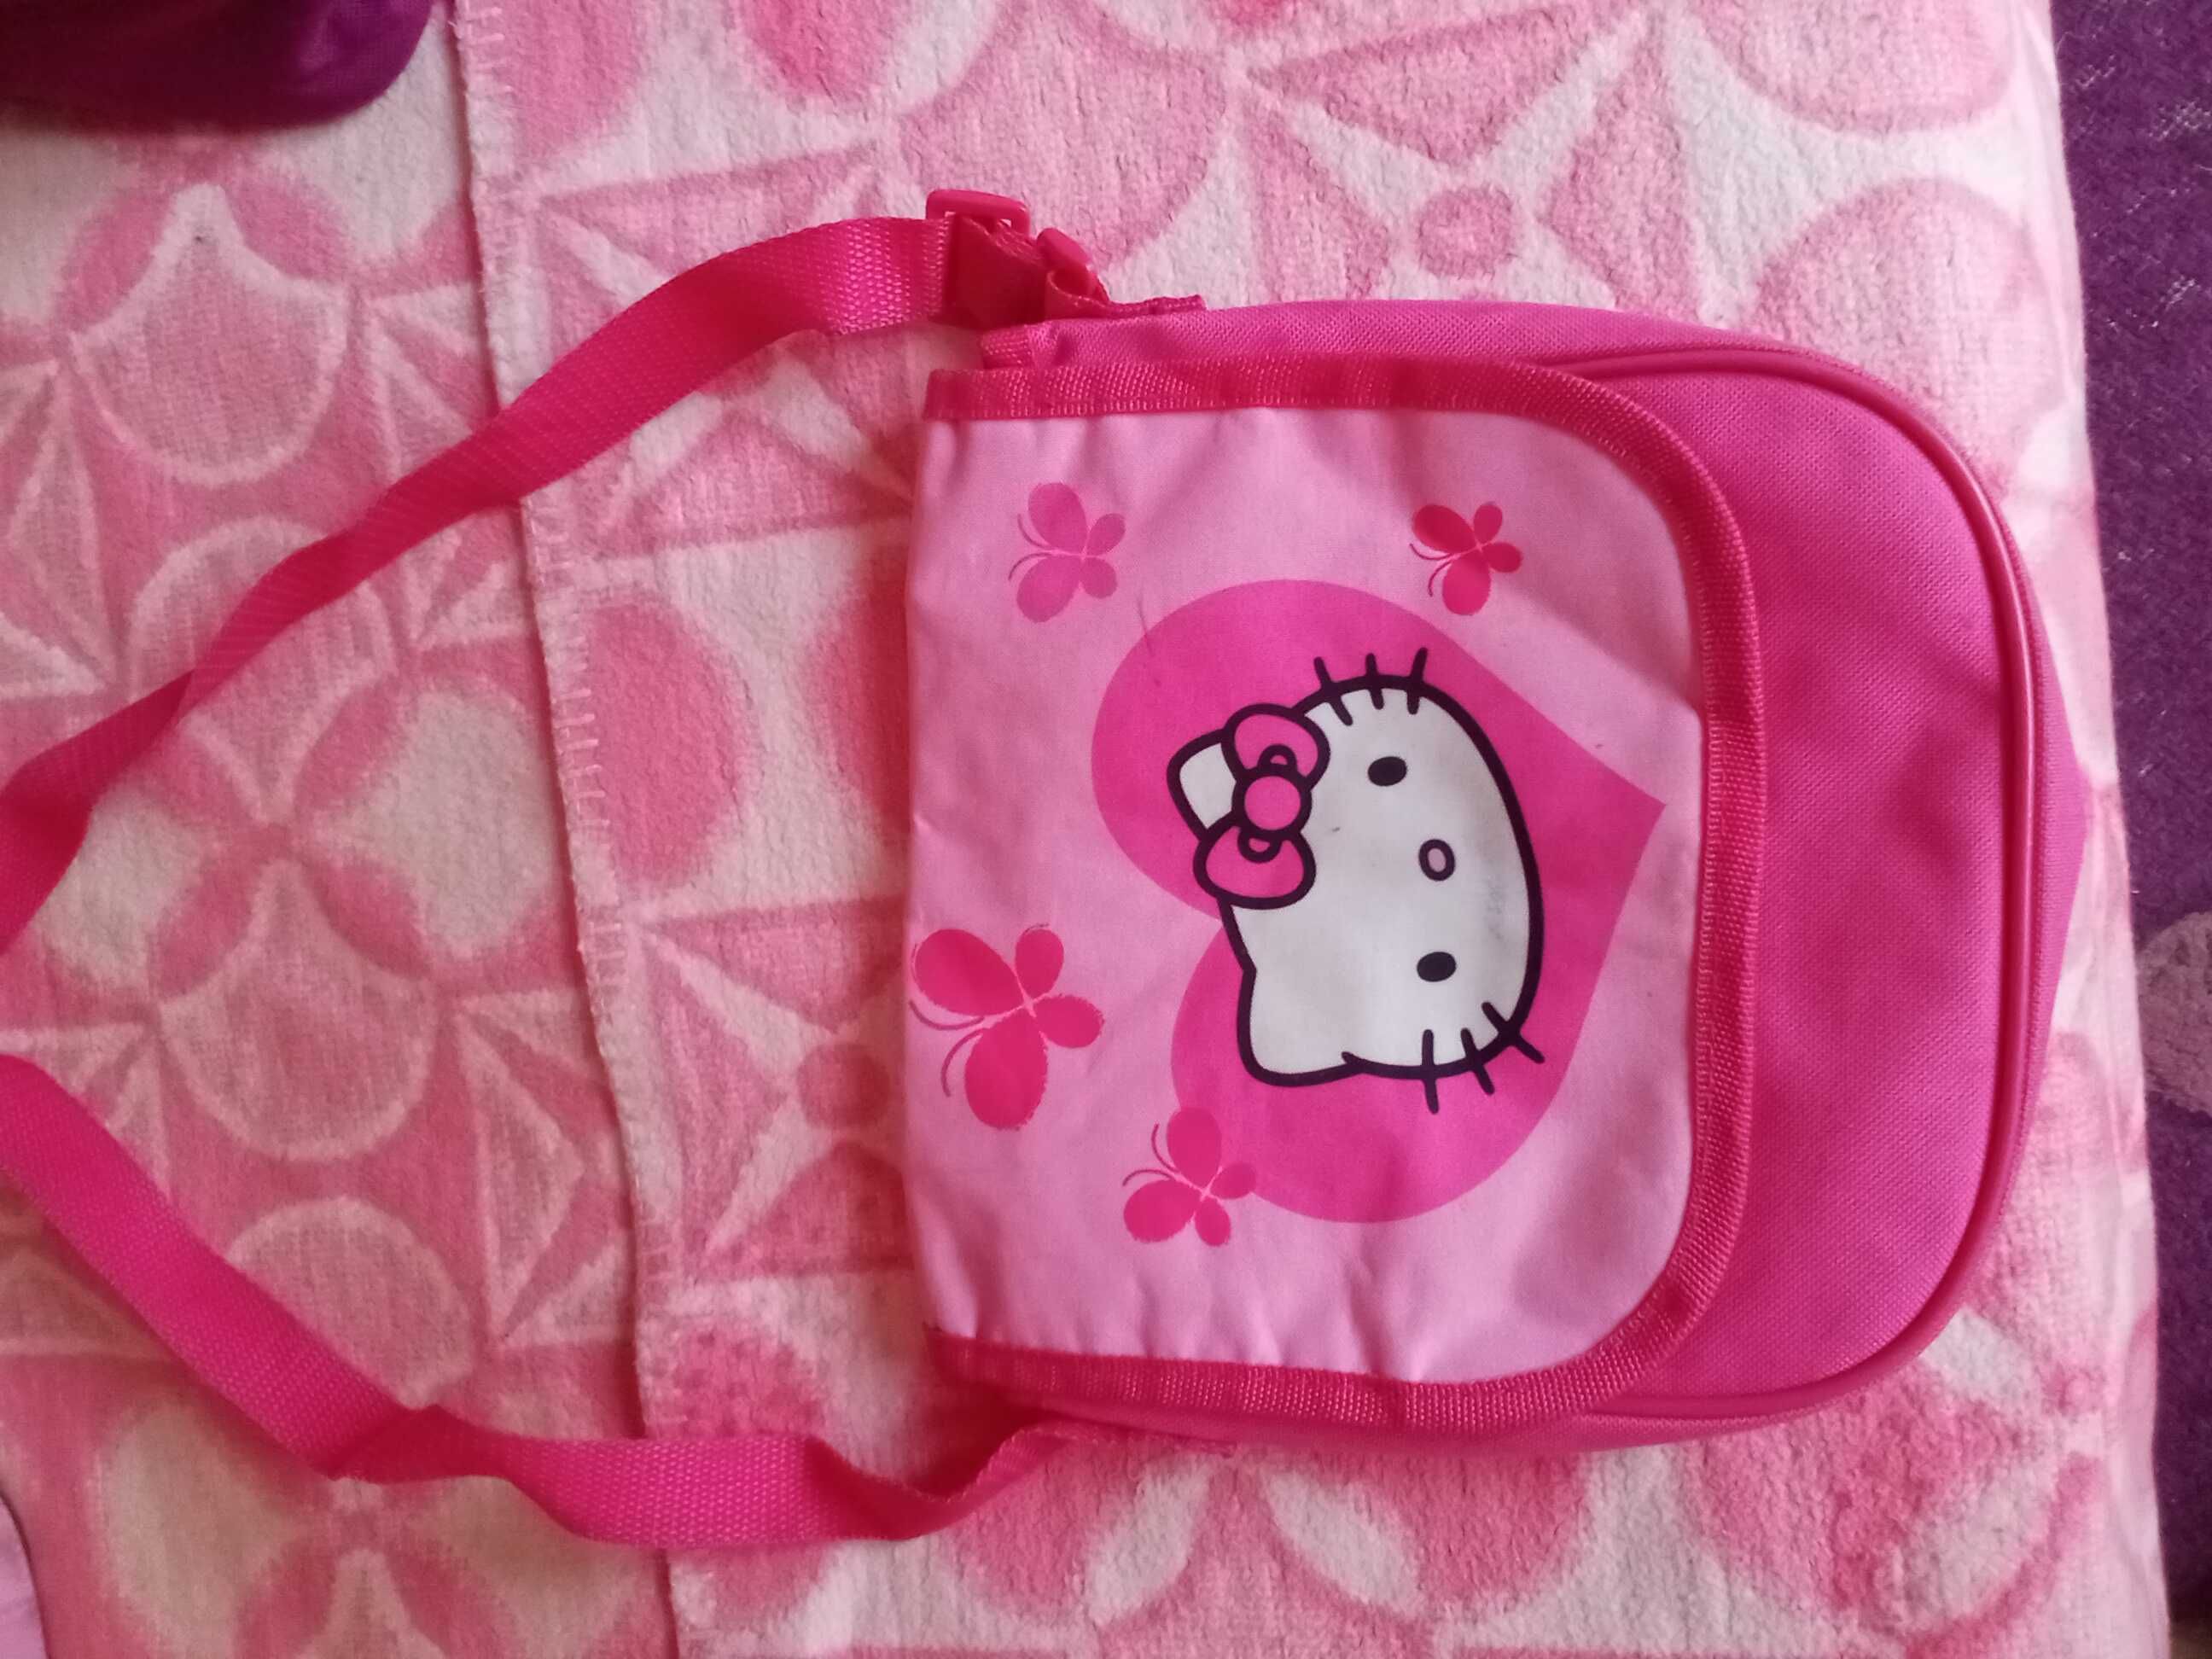 Детски раници,чанти и портмонета на Елза,Hello Kitty,Zara,еднорог